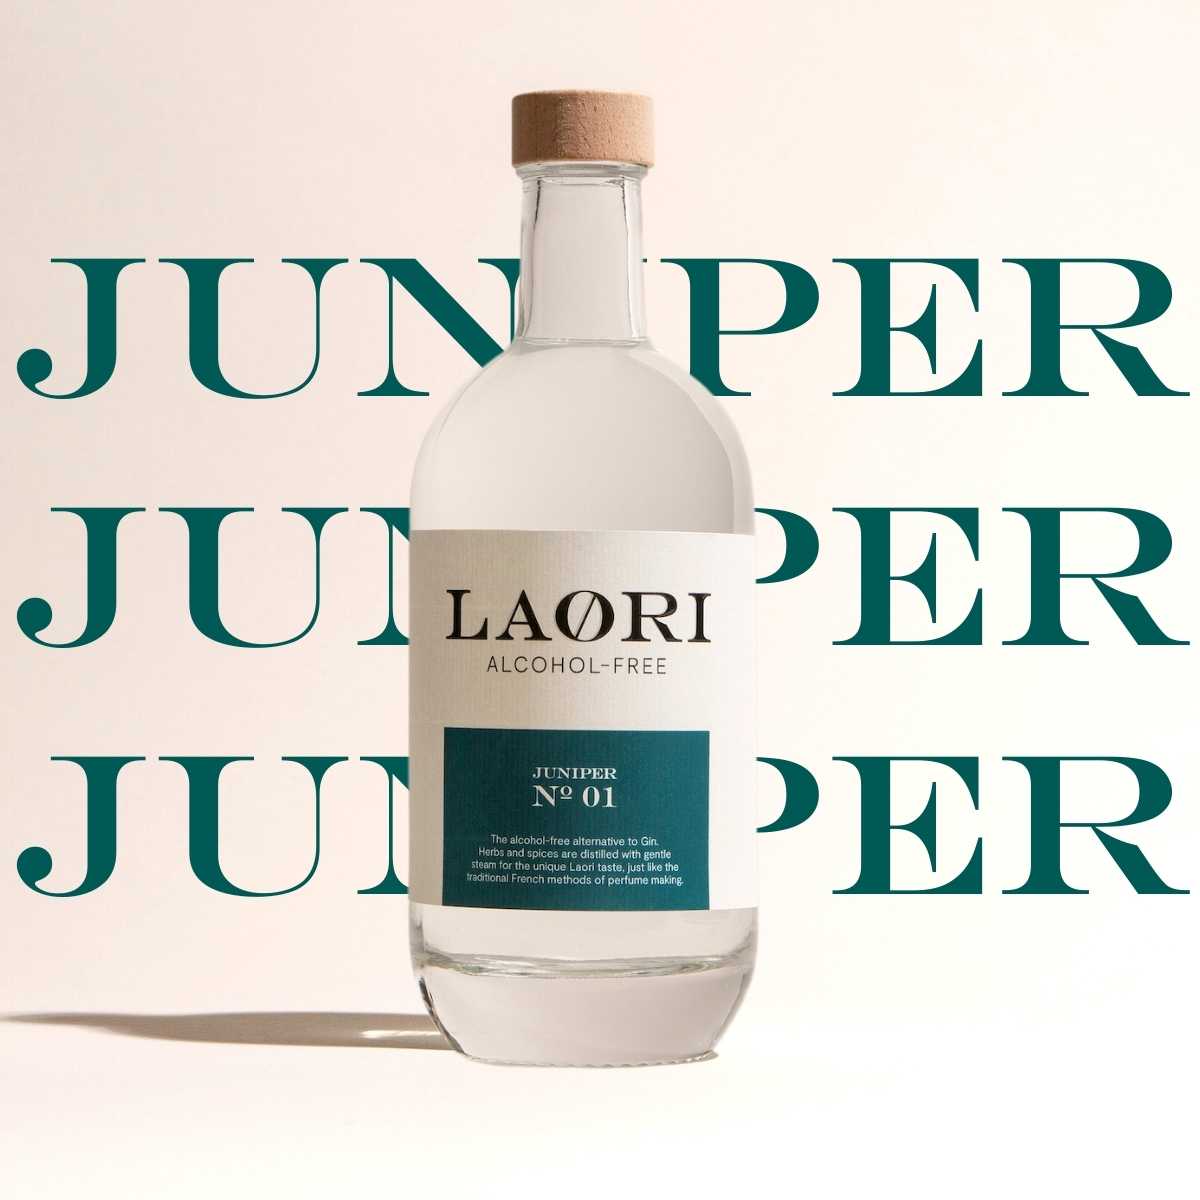 Laori Juniper No 1 + Mousserende Riesling